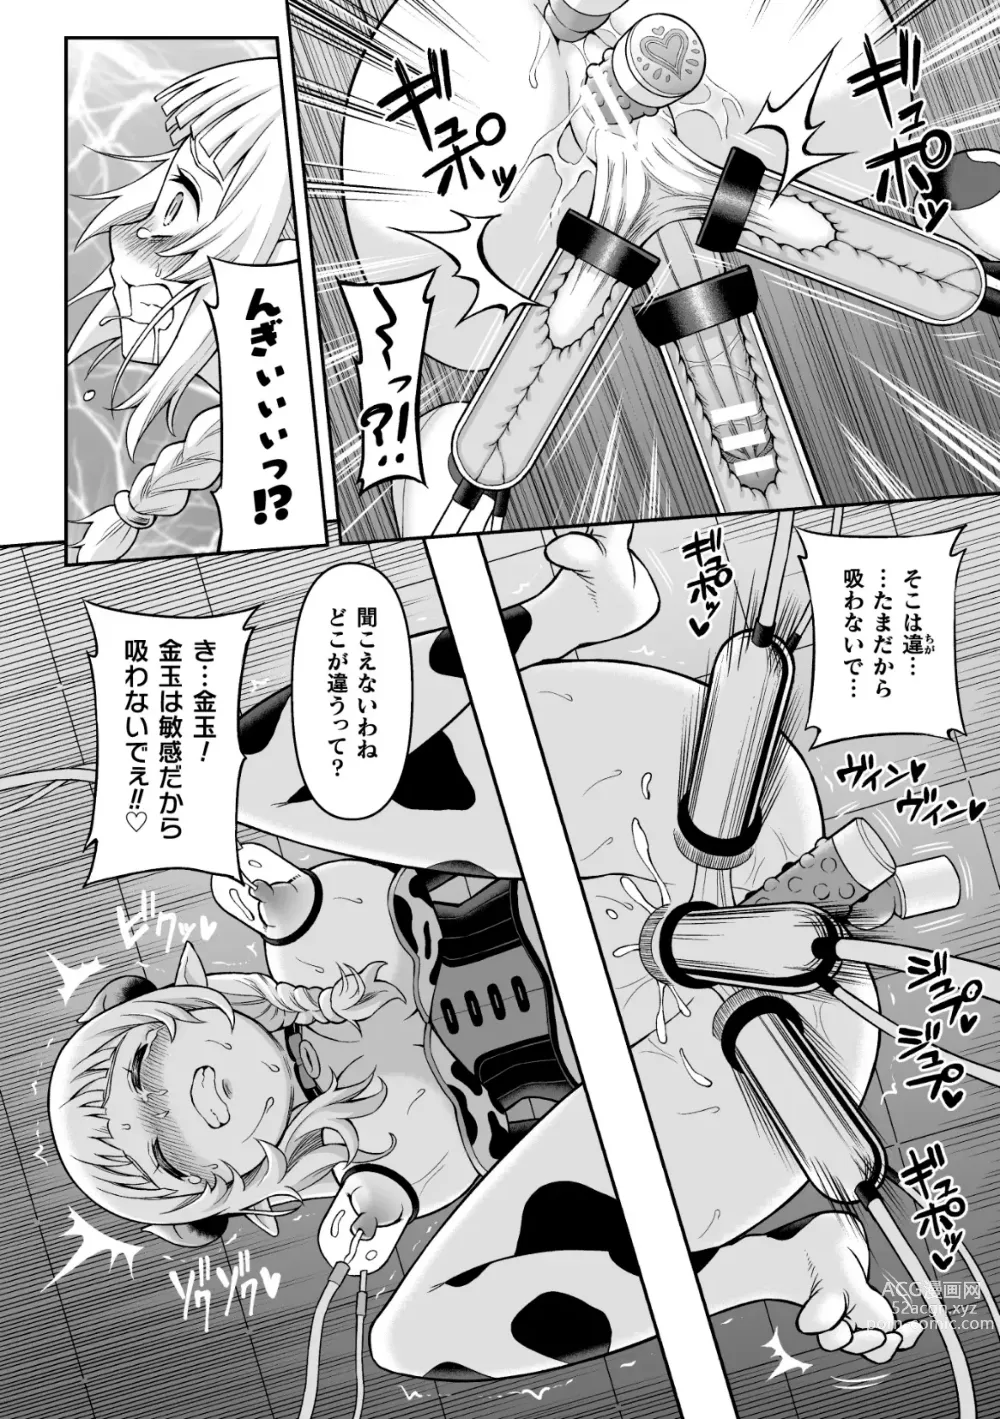 Page 32 of manga 2D Comic Magazine Futanari Kabe Sao Kabe Shiri Futanari Heroine Sakusei Iki Jigoku! Vol. 1